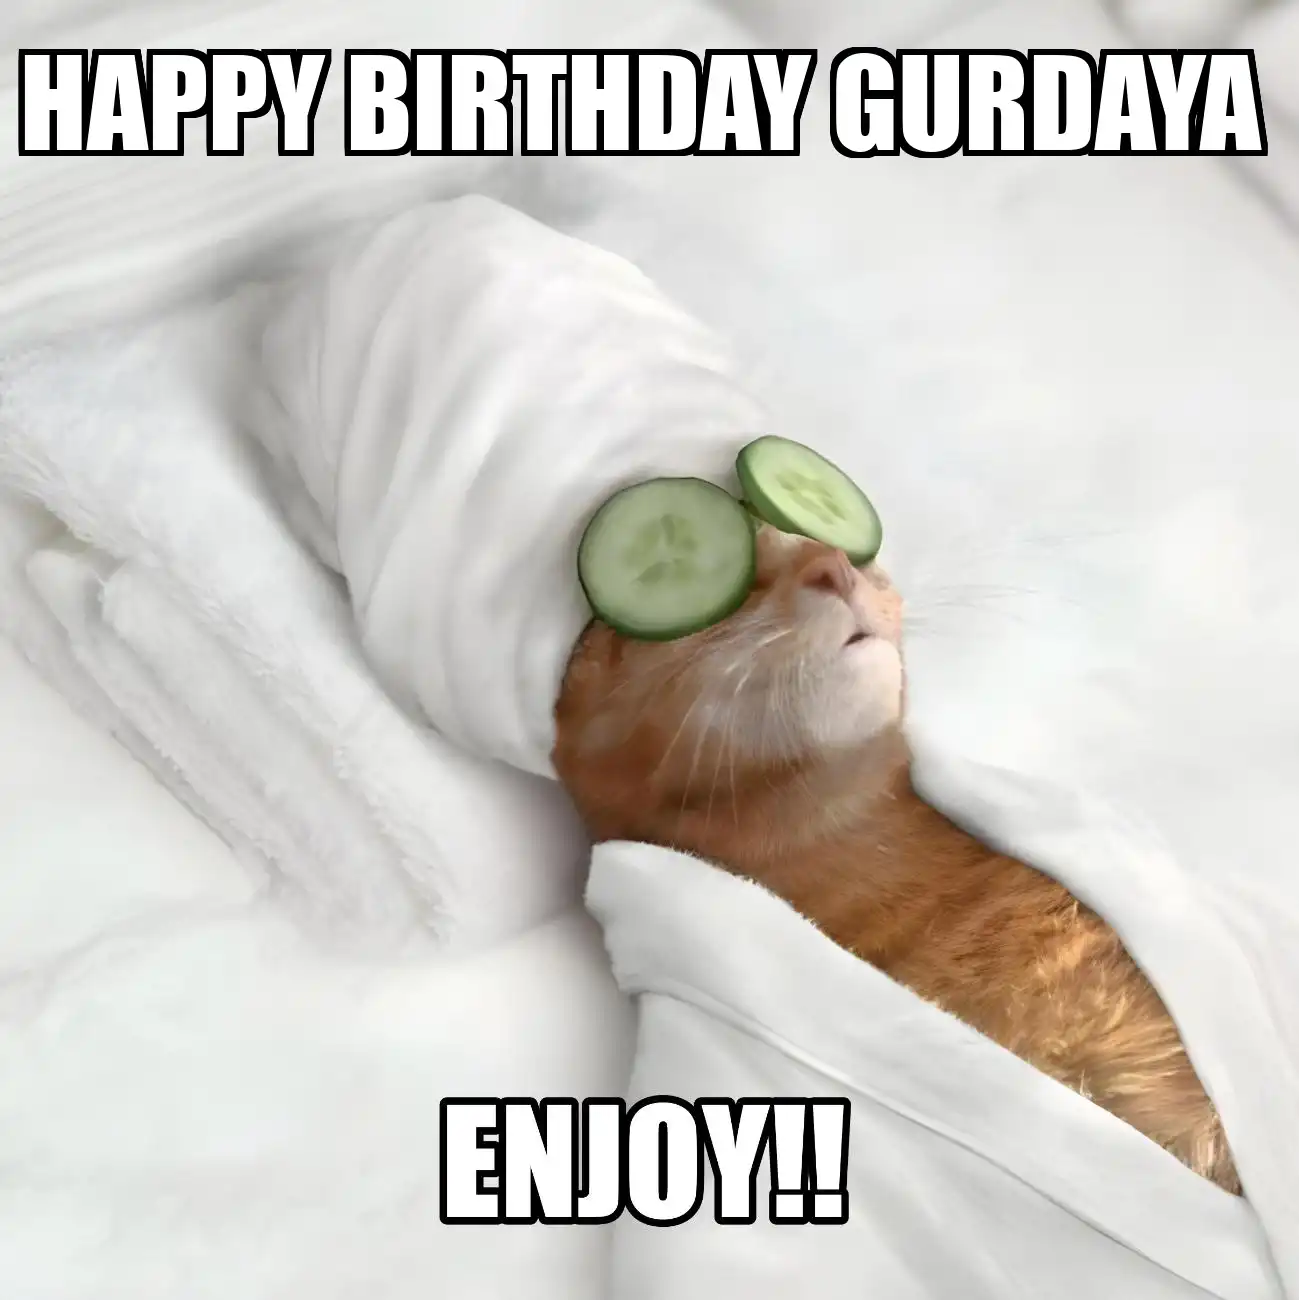 Happy Birthday Gurdaya Enjoy Cat Meme